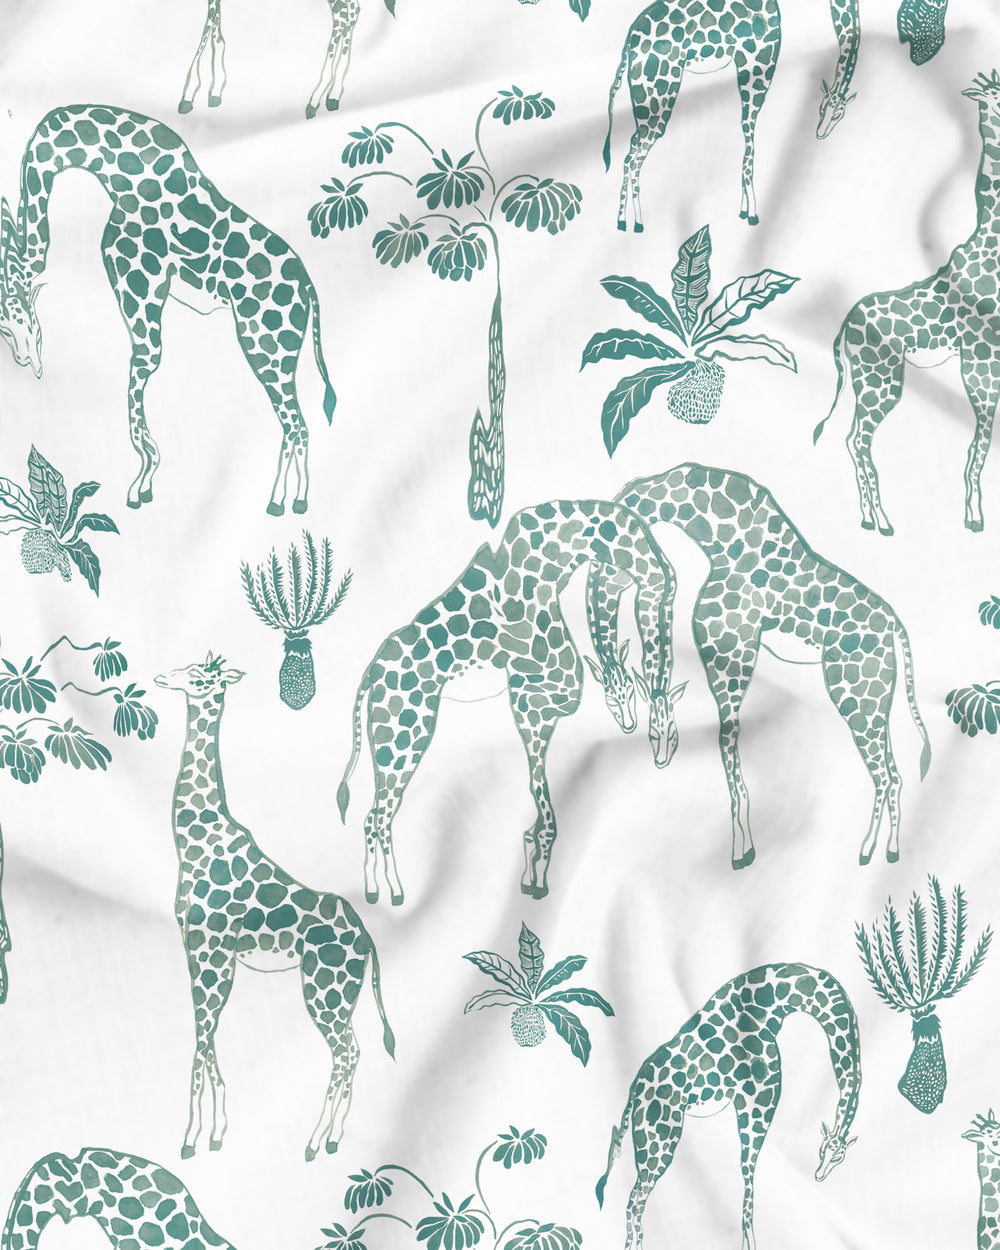 Giraffes Green Pattern Details - Woodstock Laundry